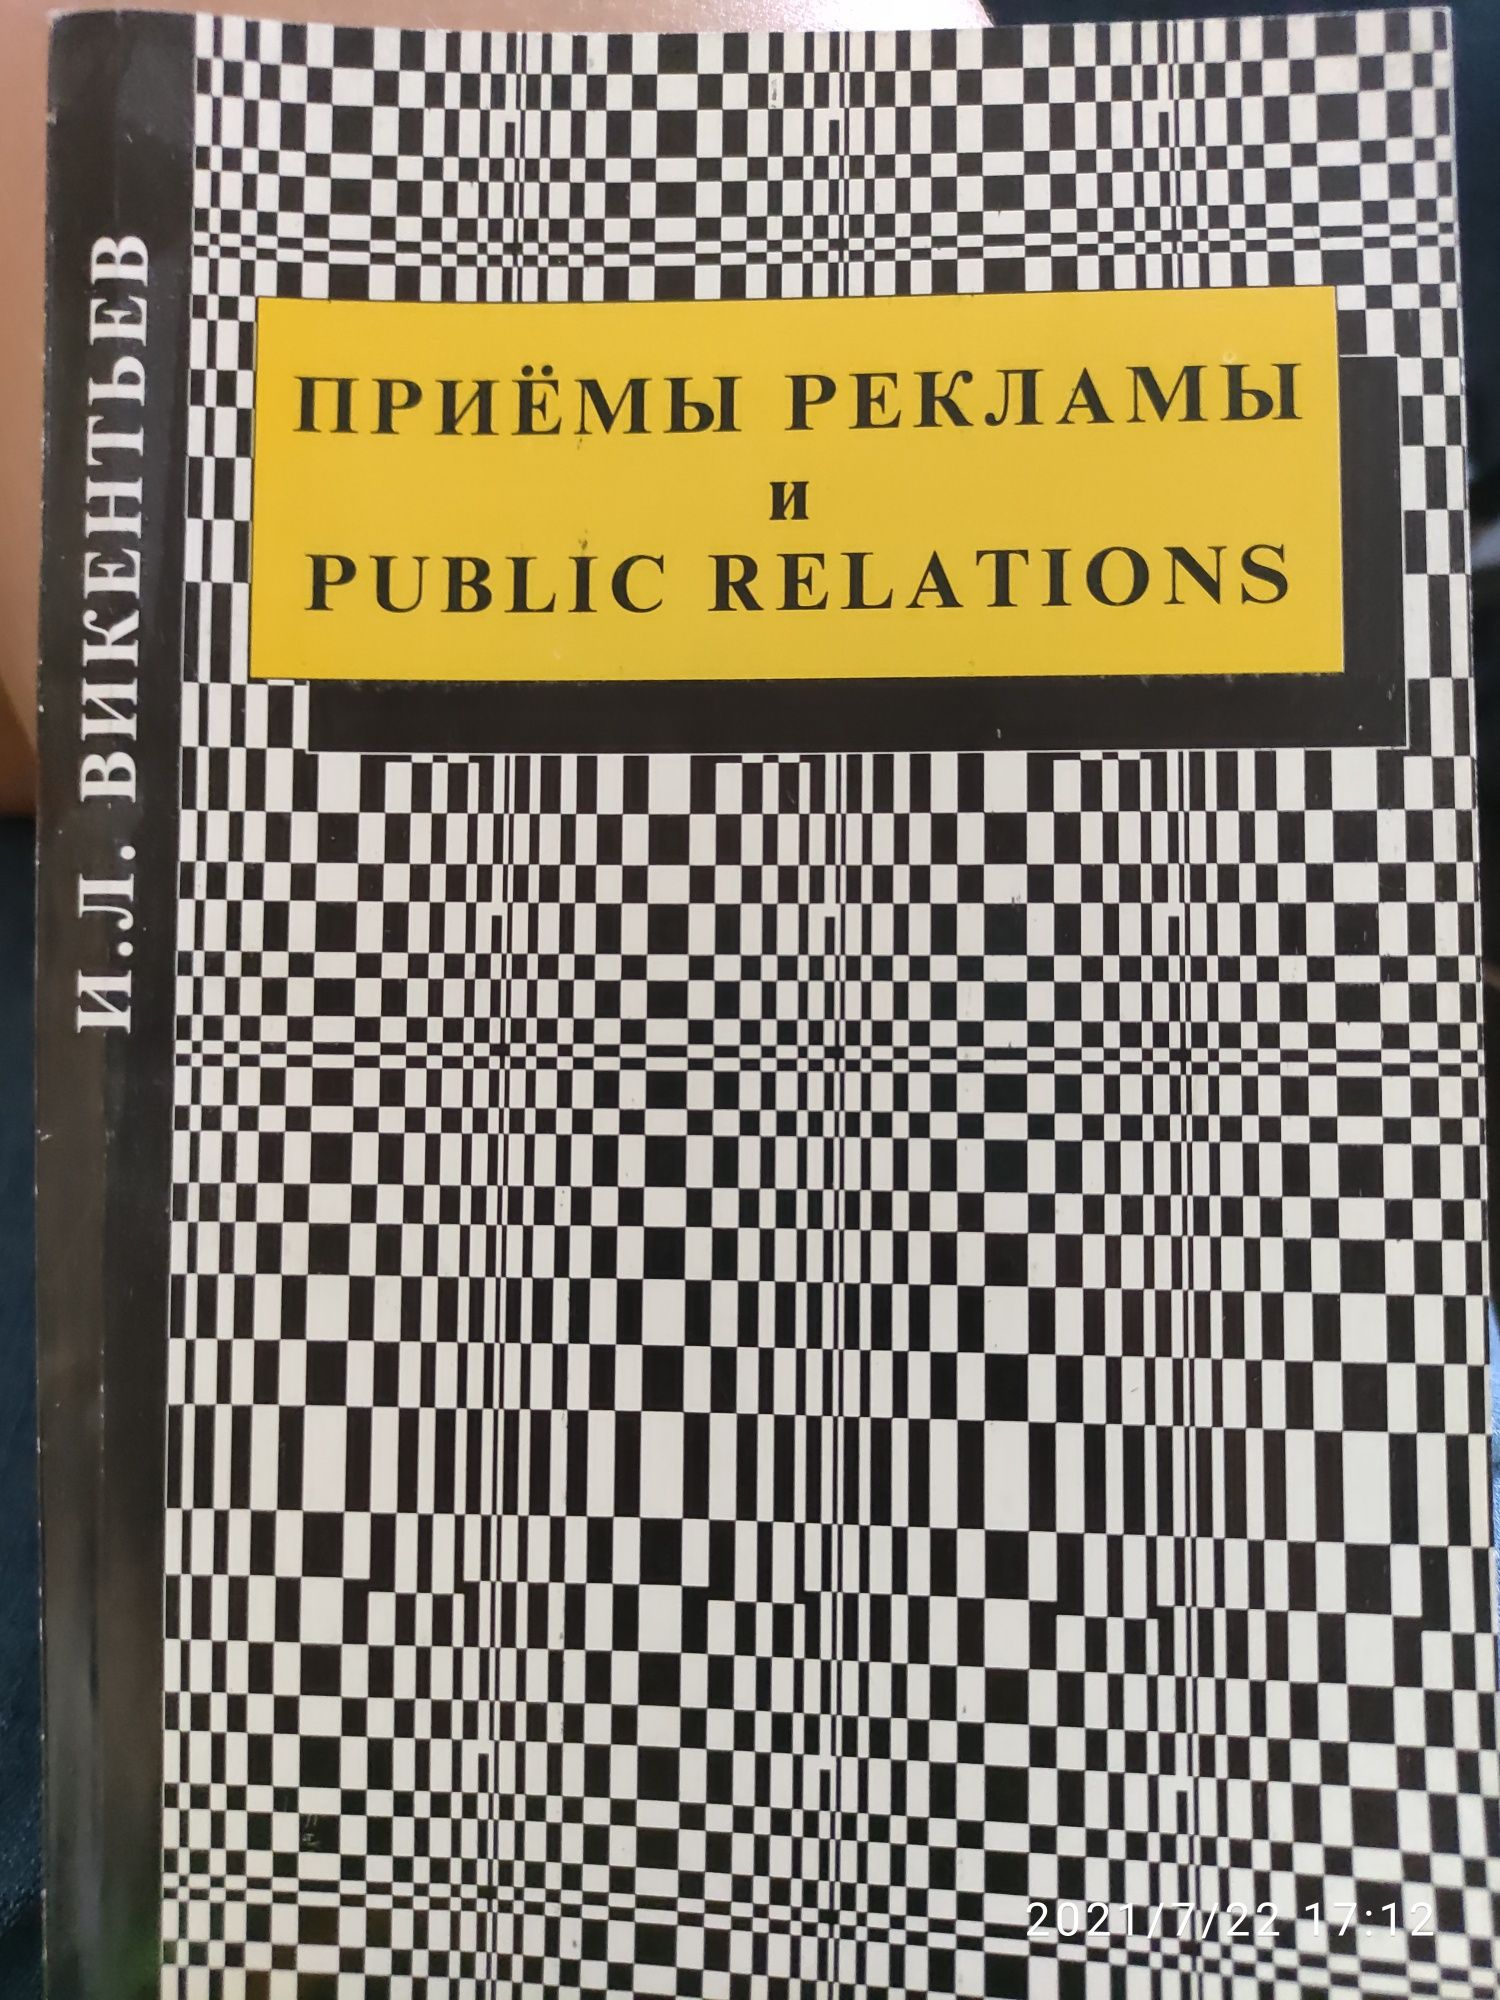 Золотая книга по PR от И.Л. Викентьев